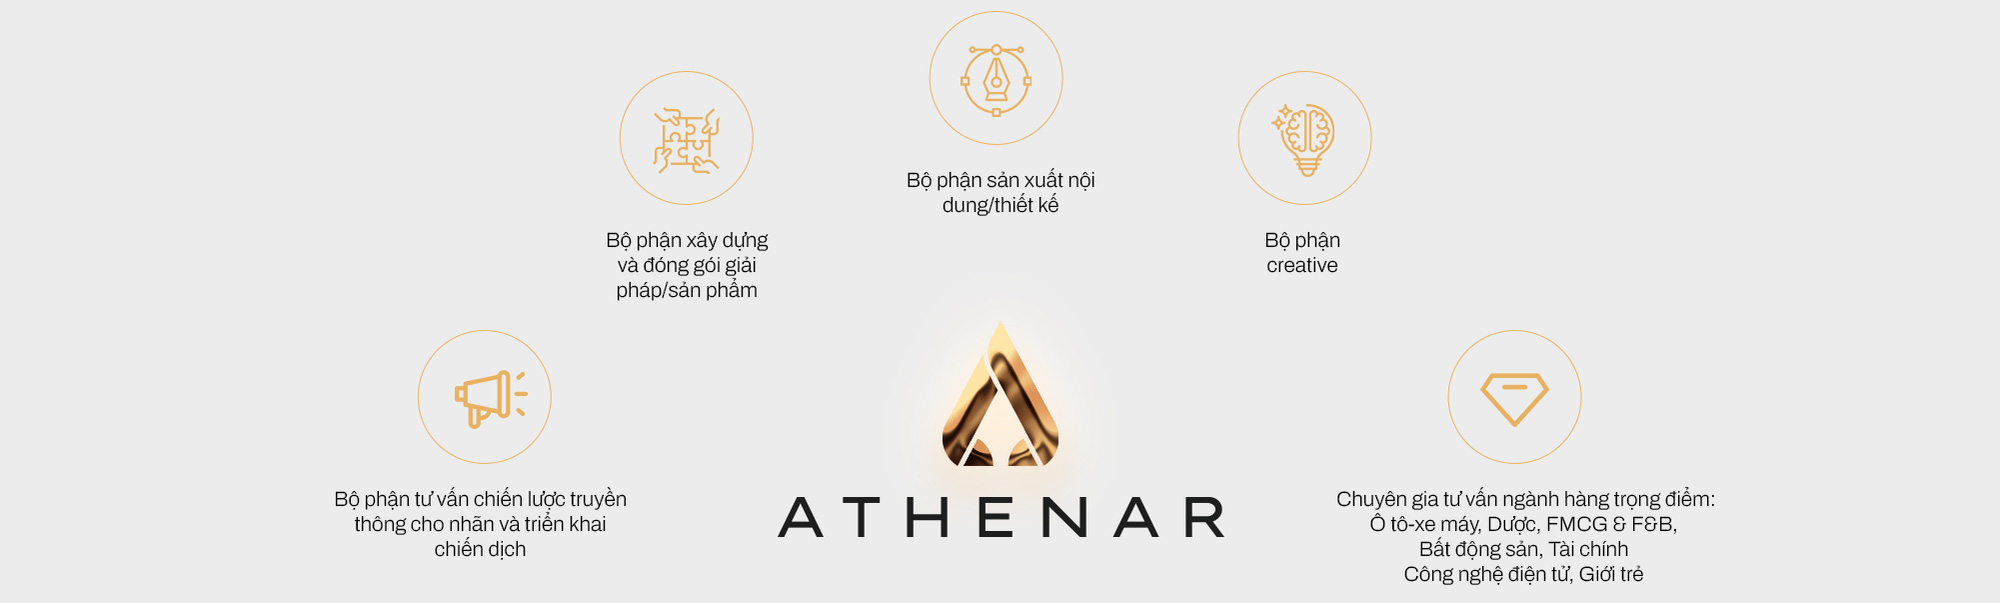 Tái định vị thương hiệu, Athenar Agency tạo lập vị thế chuyên gia nội dung số hàng đầu thị trường - Ảnh 11.